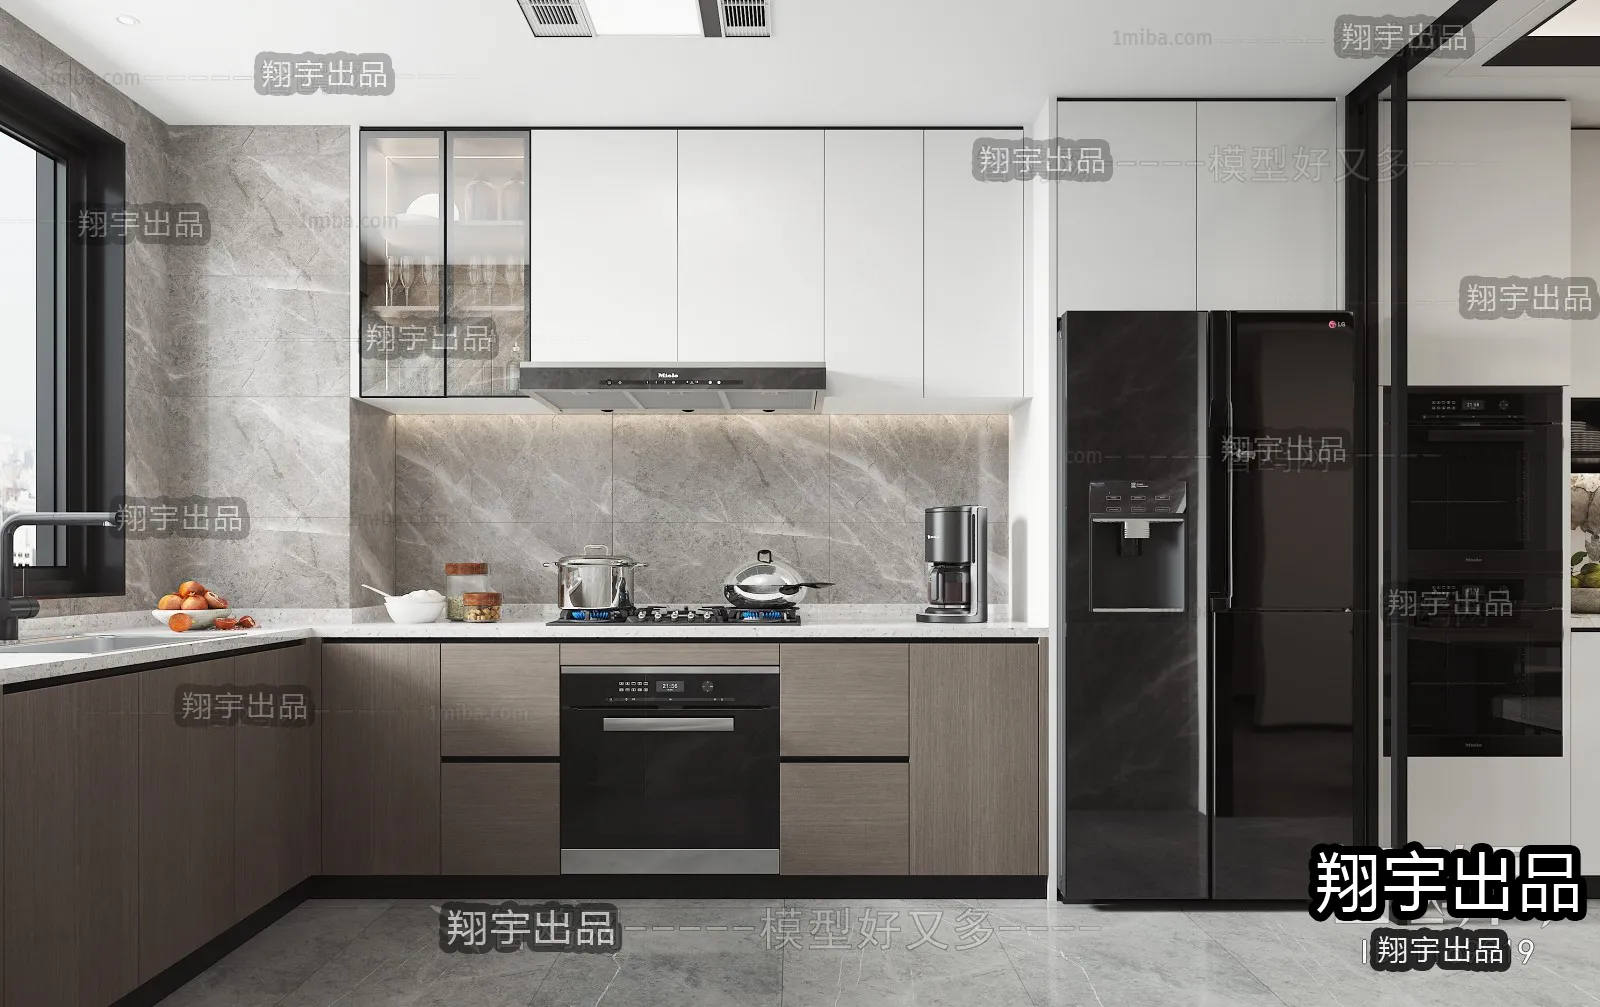 Kitchen – Modern Interior Design – 3D Models – 022